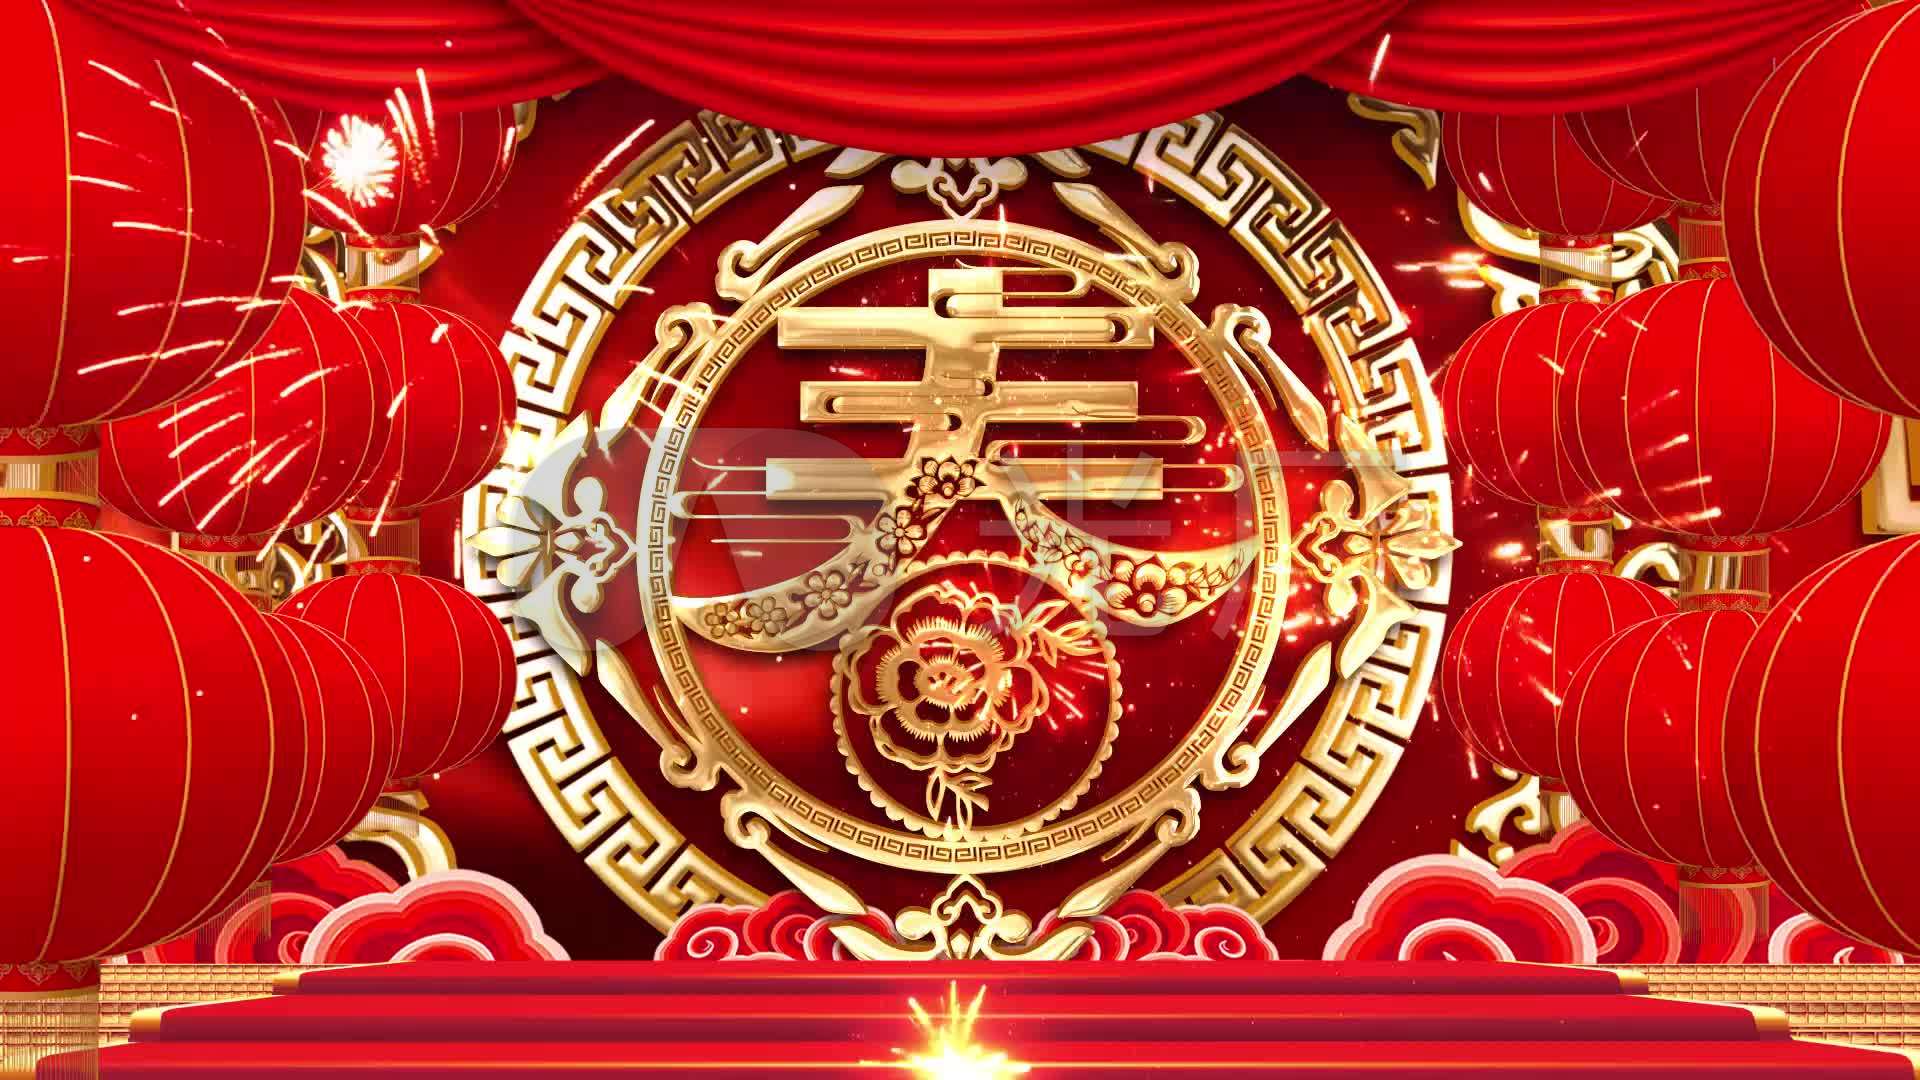 春节序曲红色喜庆灯笼背景视频